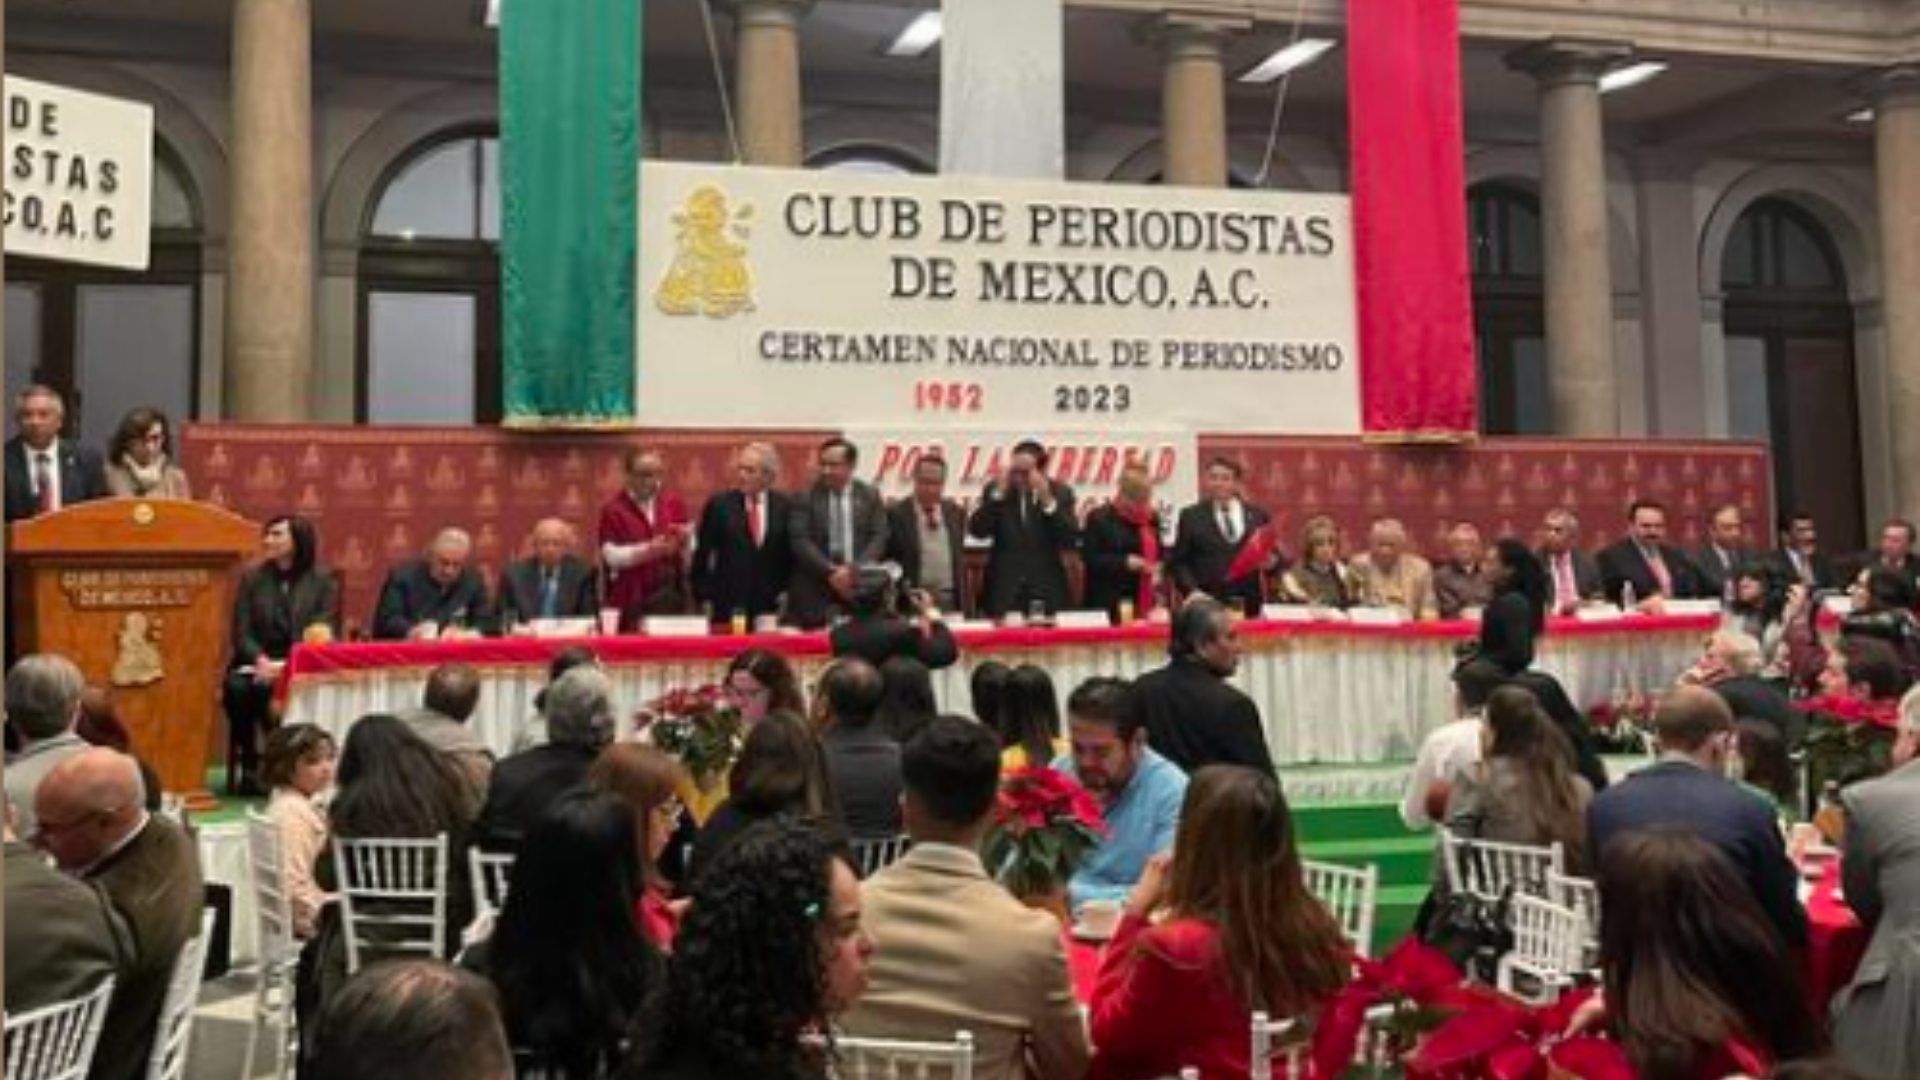 Paco Santa Anna y Toño de Valdés reciben Premio Nacional de Periodismo